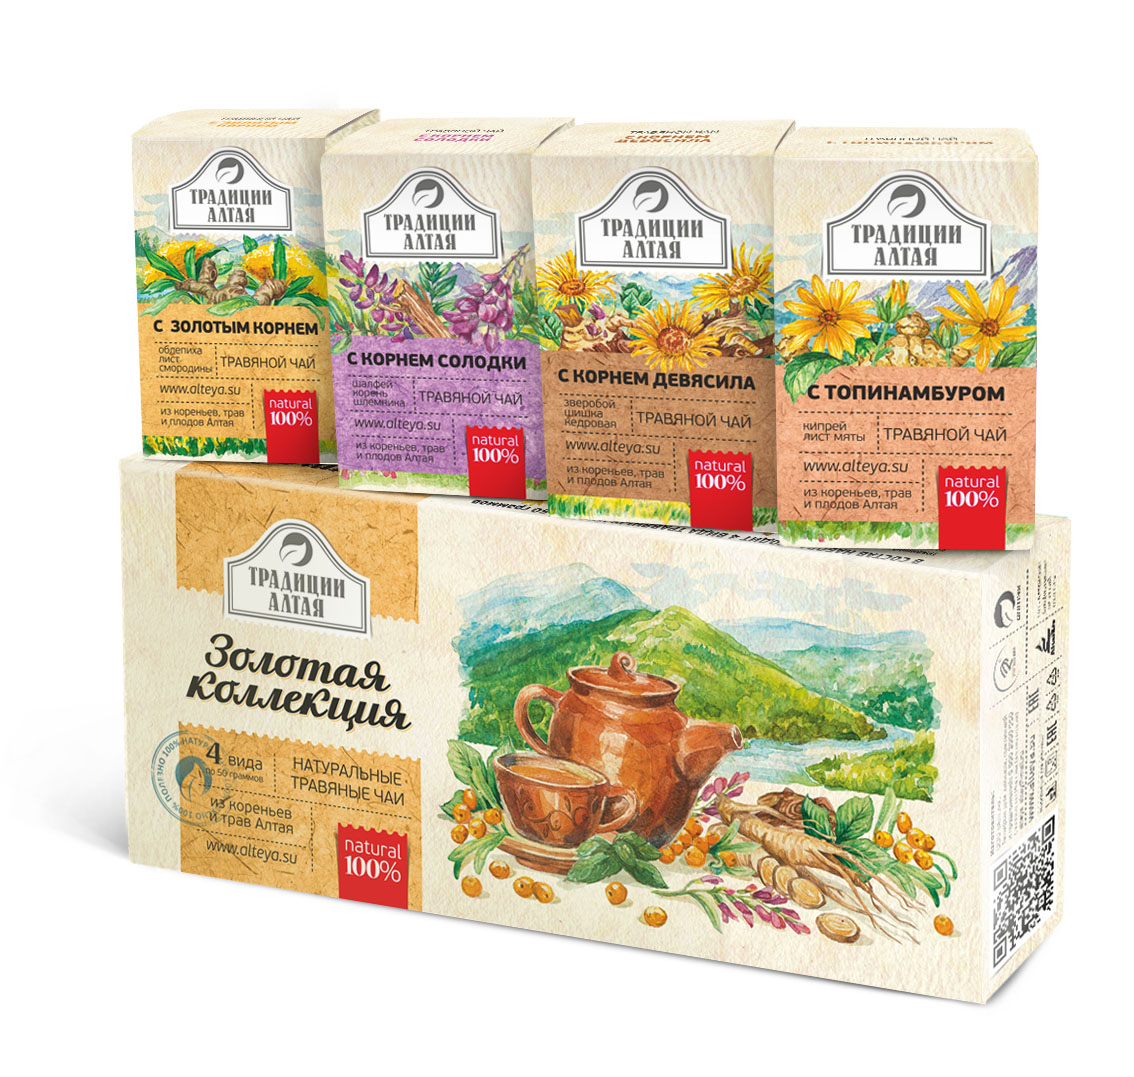 Gift set of herbal teas 